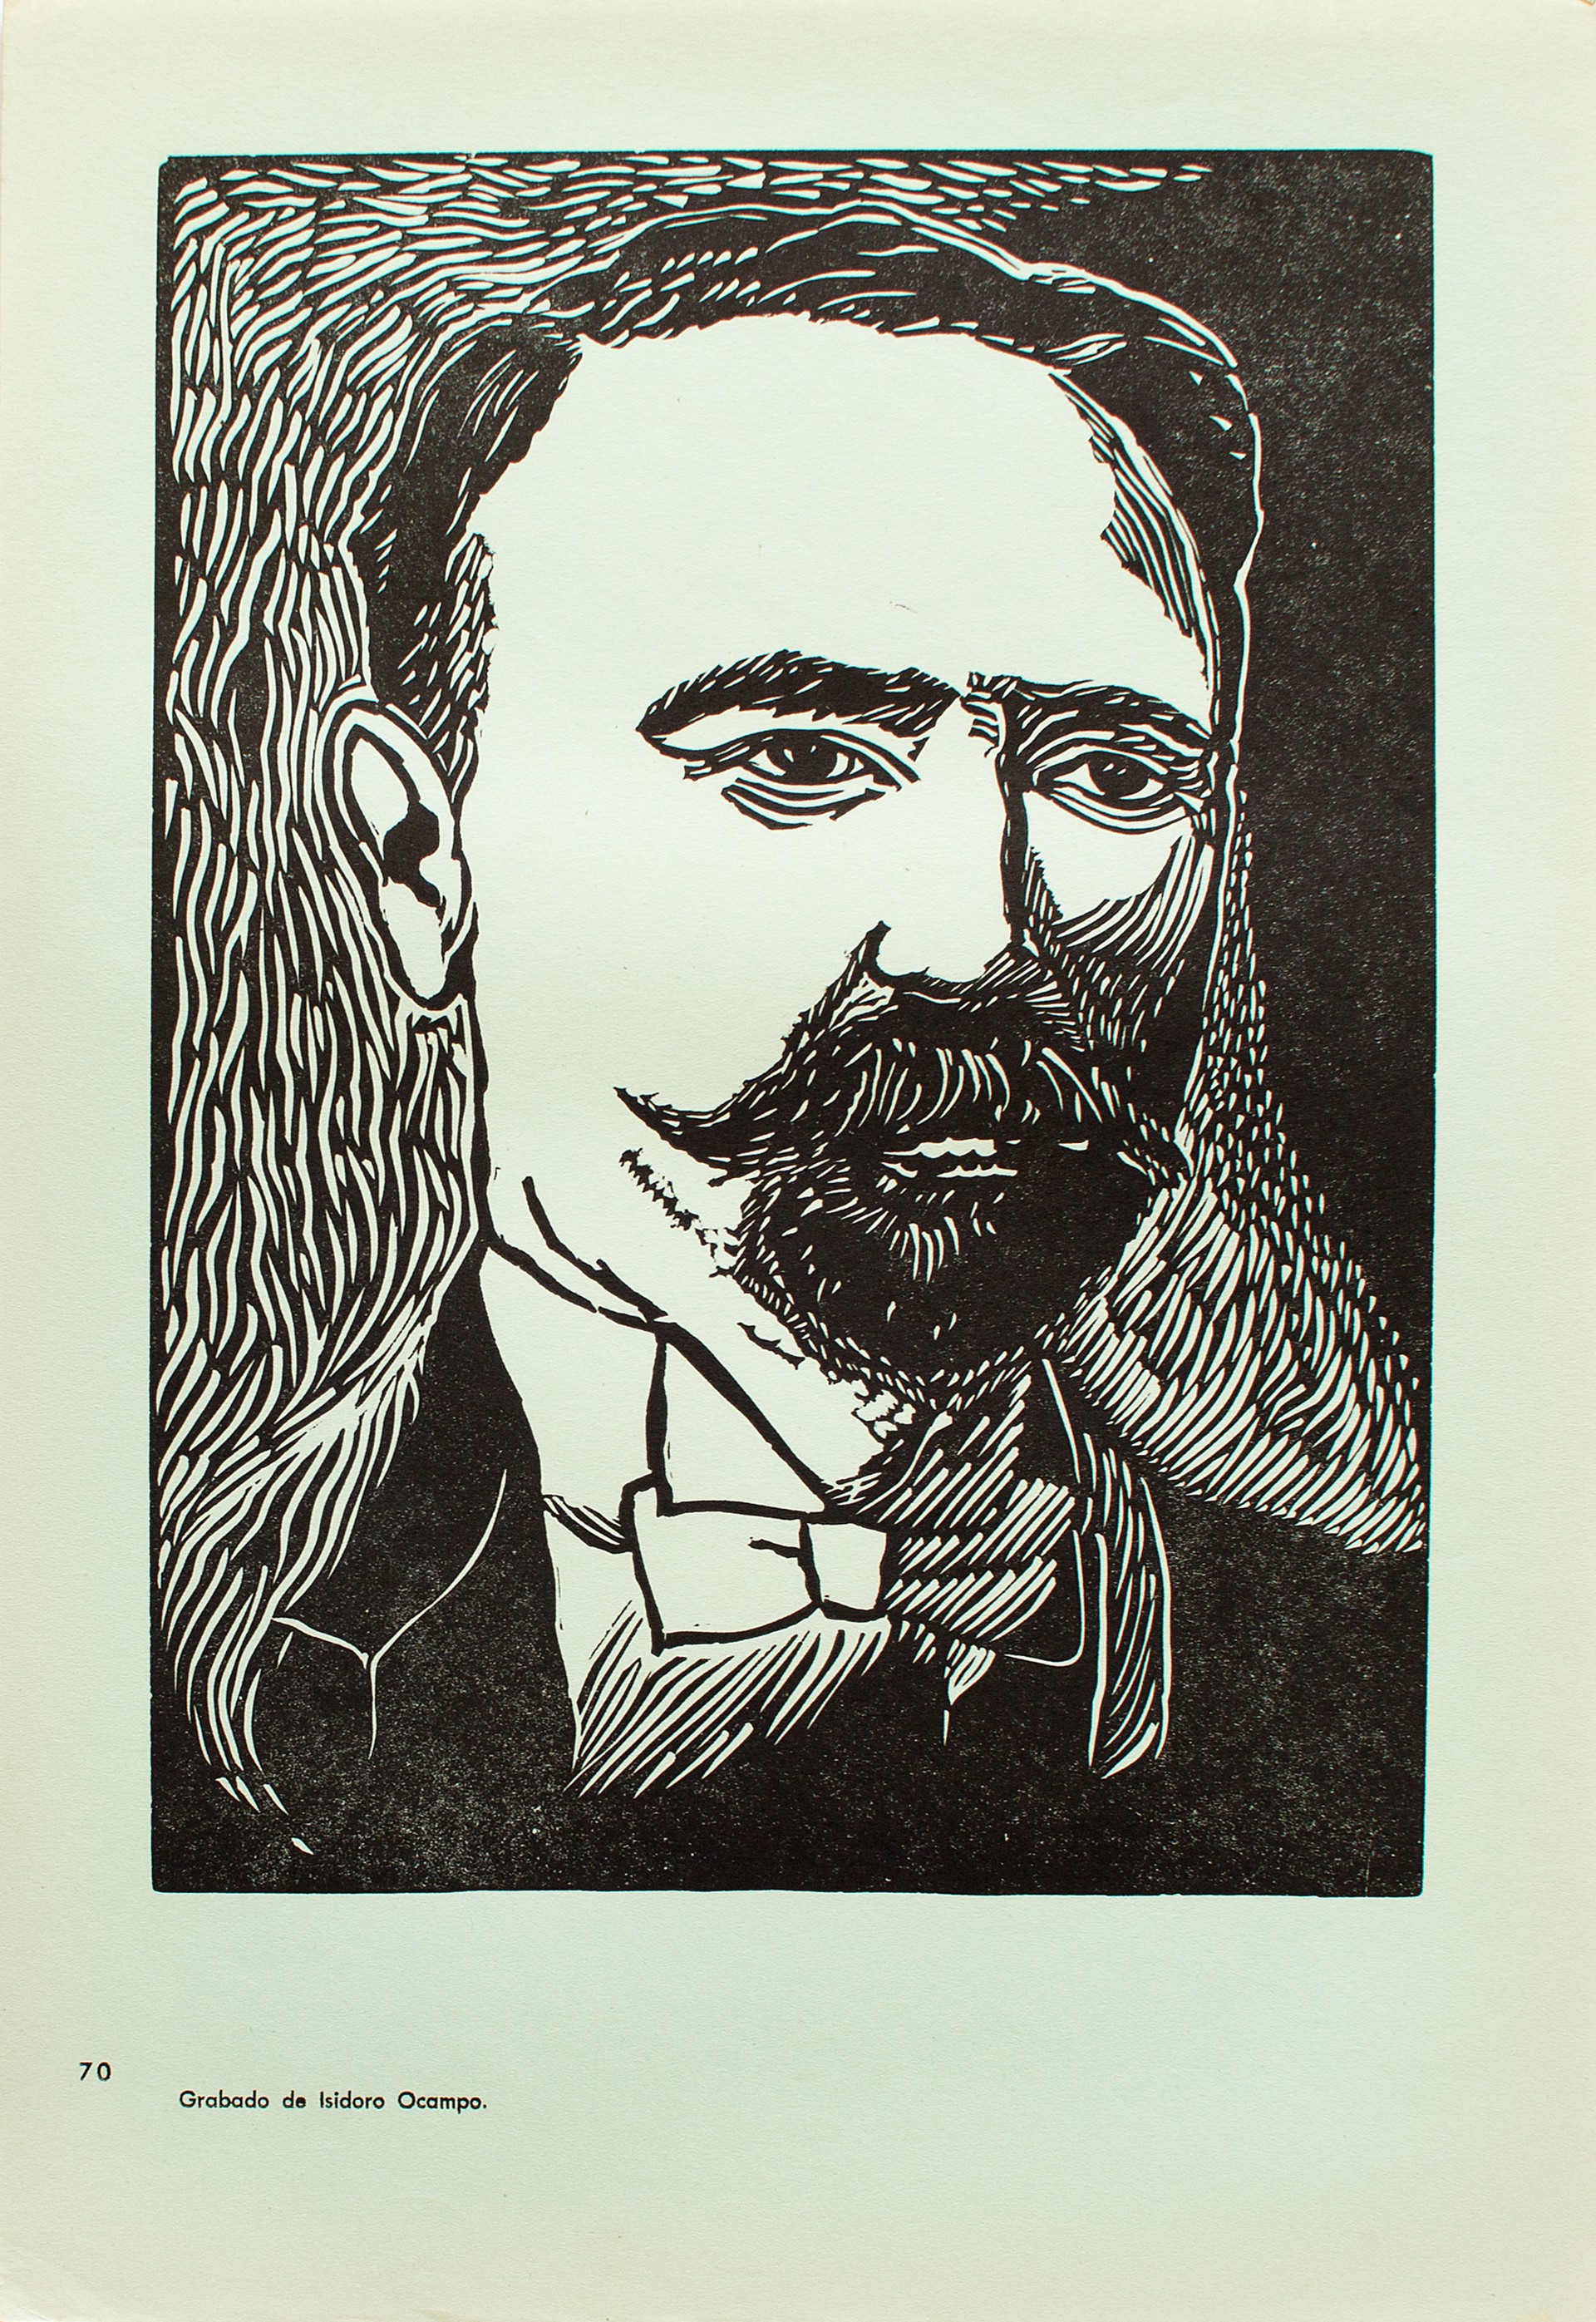 Francisco I. Madero (1873-1913) by Isidoro Ocampo